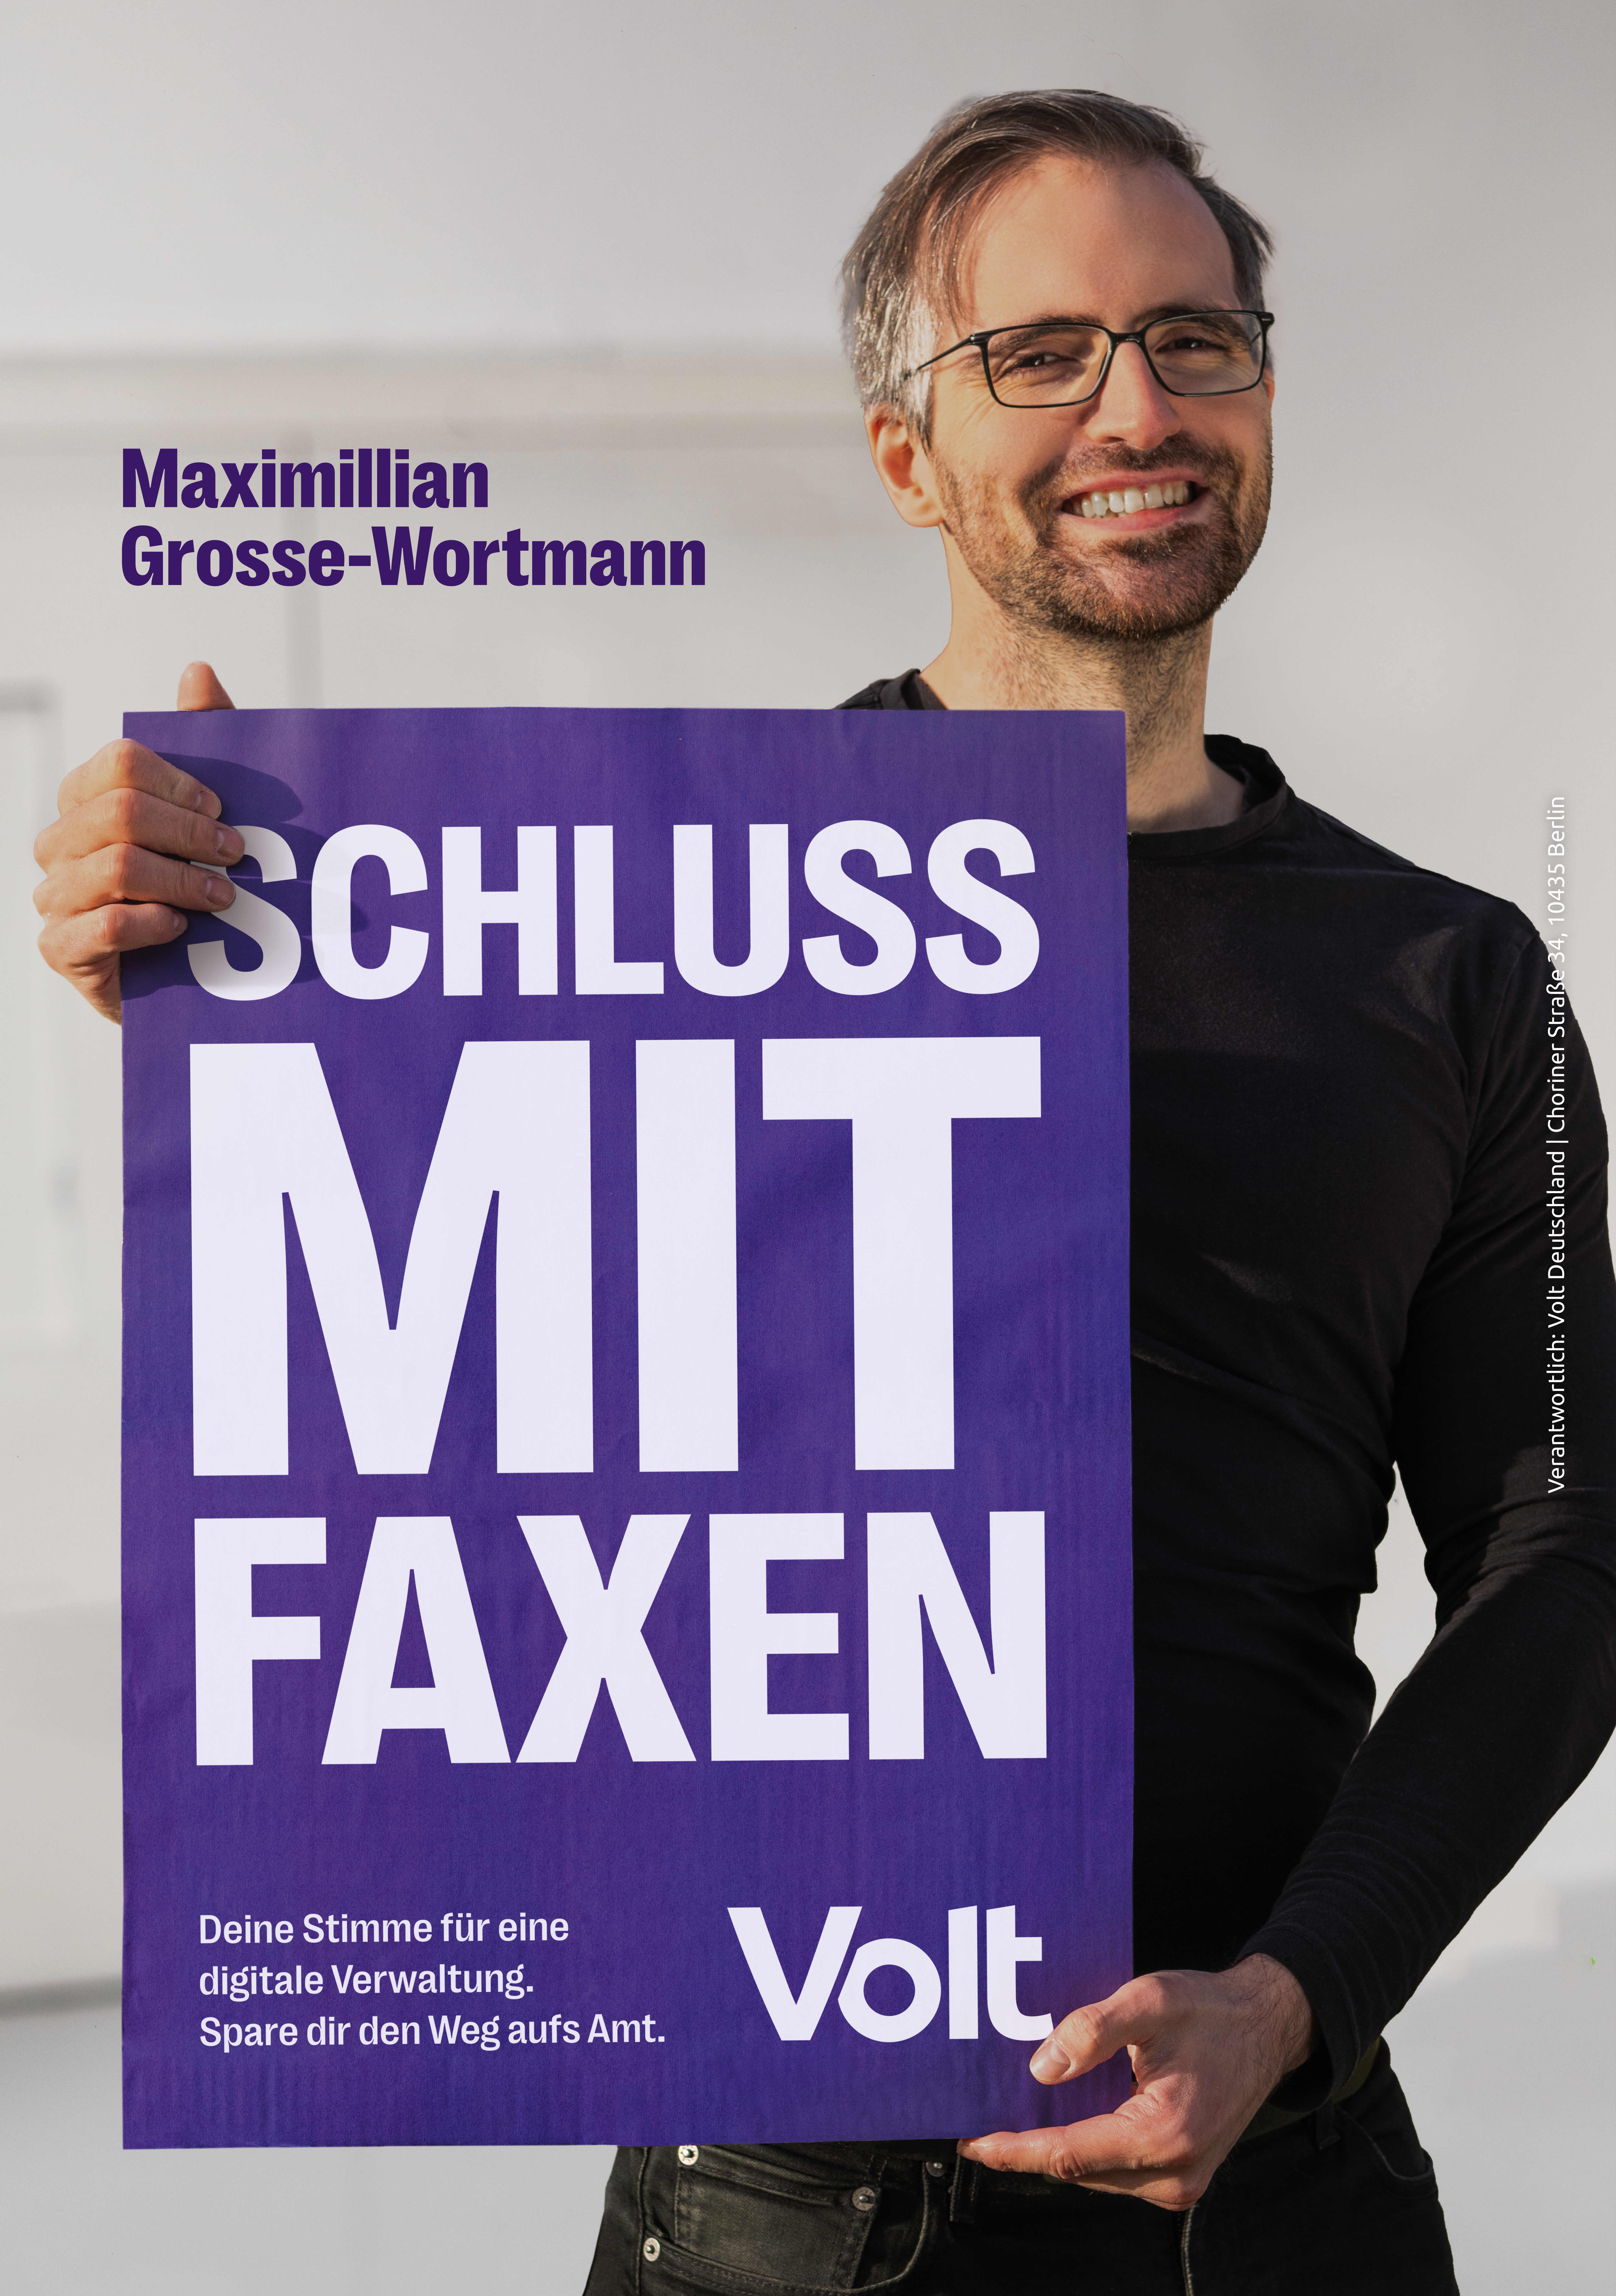 Max Große-Wortmann hält ein Plakat mit dem Spruch "Schluss mit Faxen". Als Erklärung steht darunter "Deine Stimme für eine digitale Verwaltung. Spare dir den Weg aufs Amt."